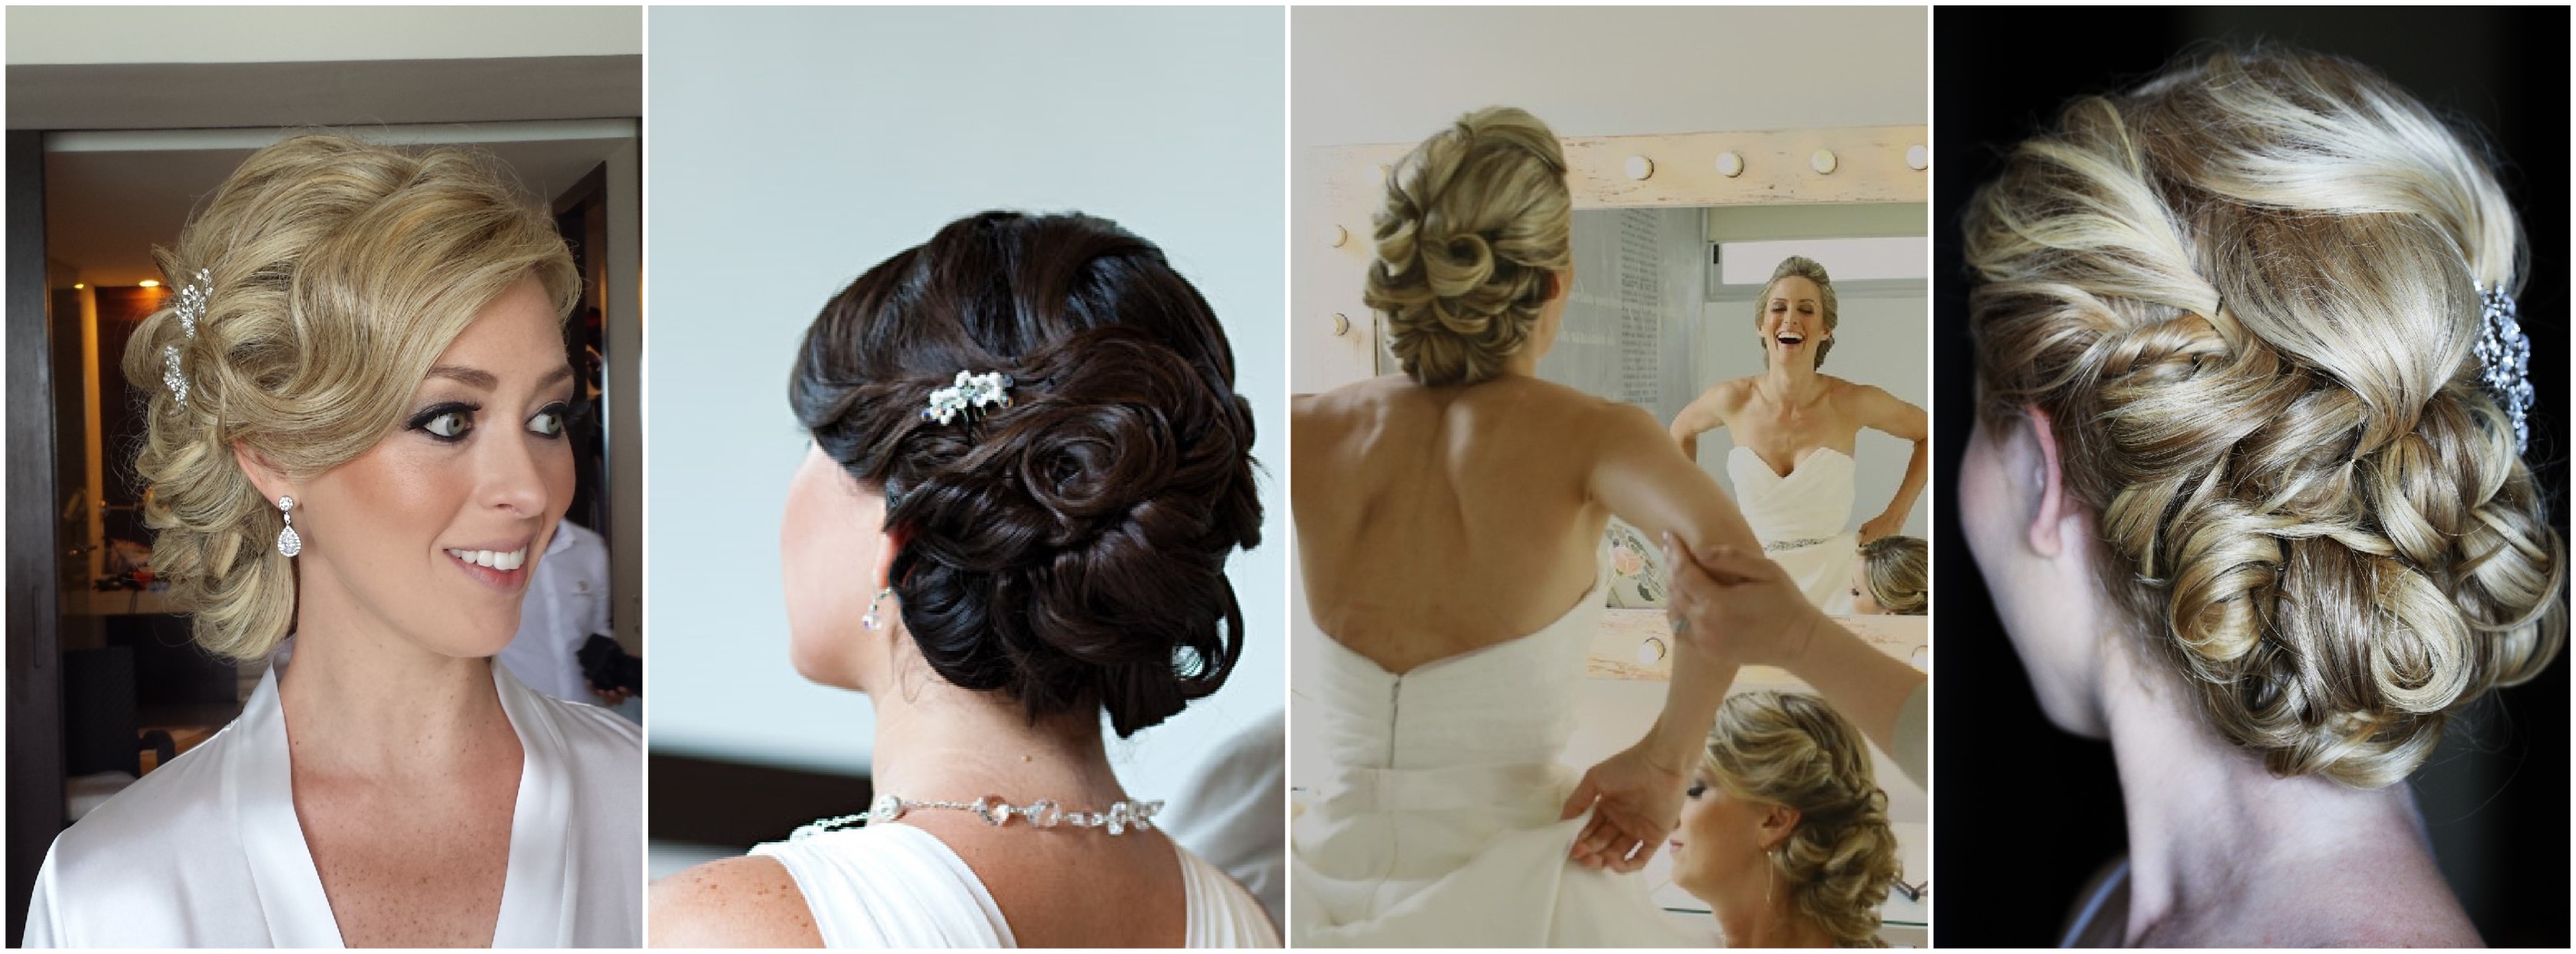 2017 wedding trends part 5: bridal hair - doranna hairstylist